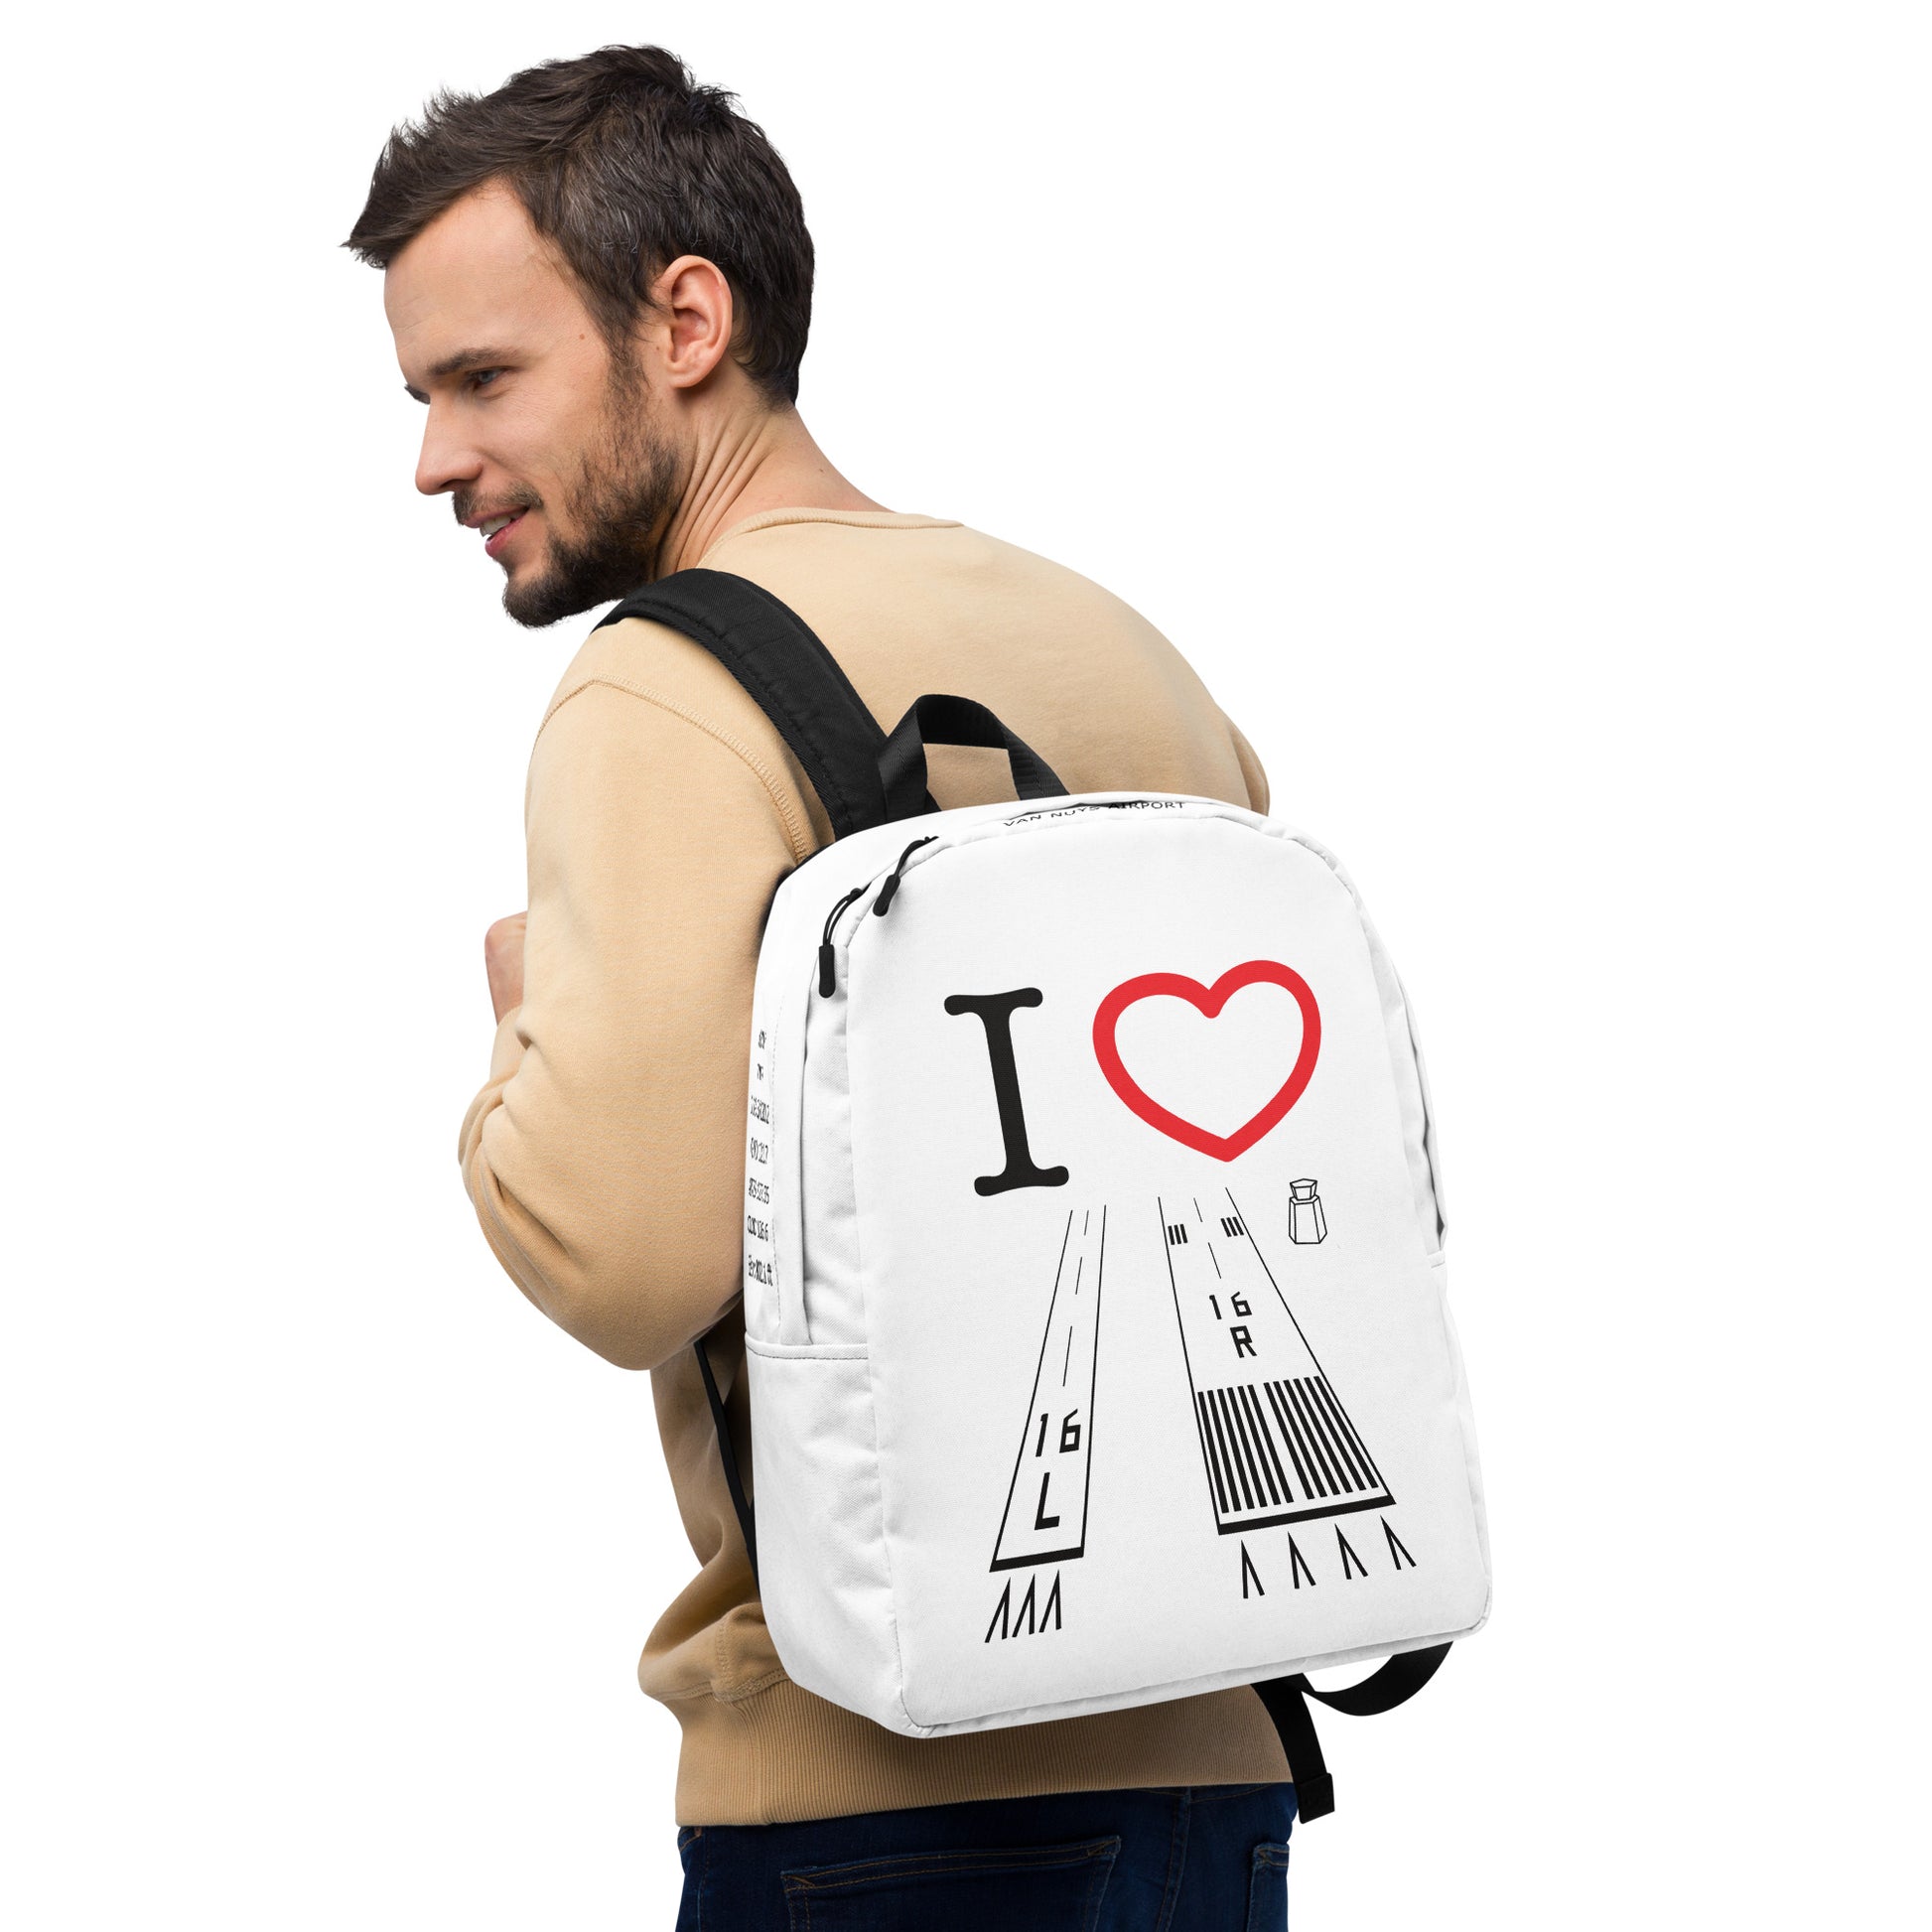 Van Nuys Airport Runways 16L / 16R - white minimalist backpack